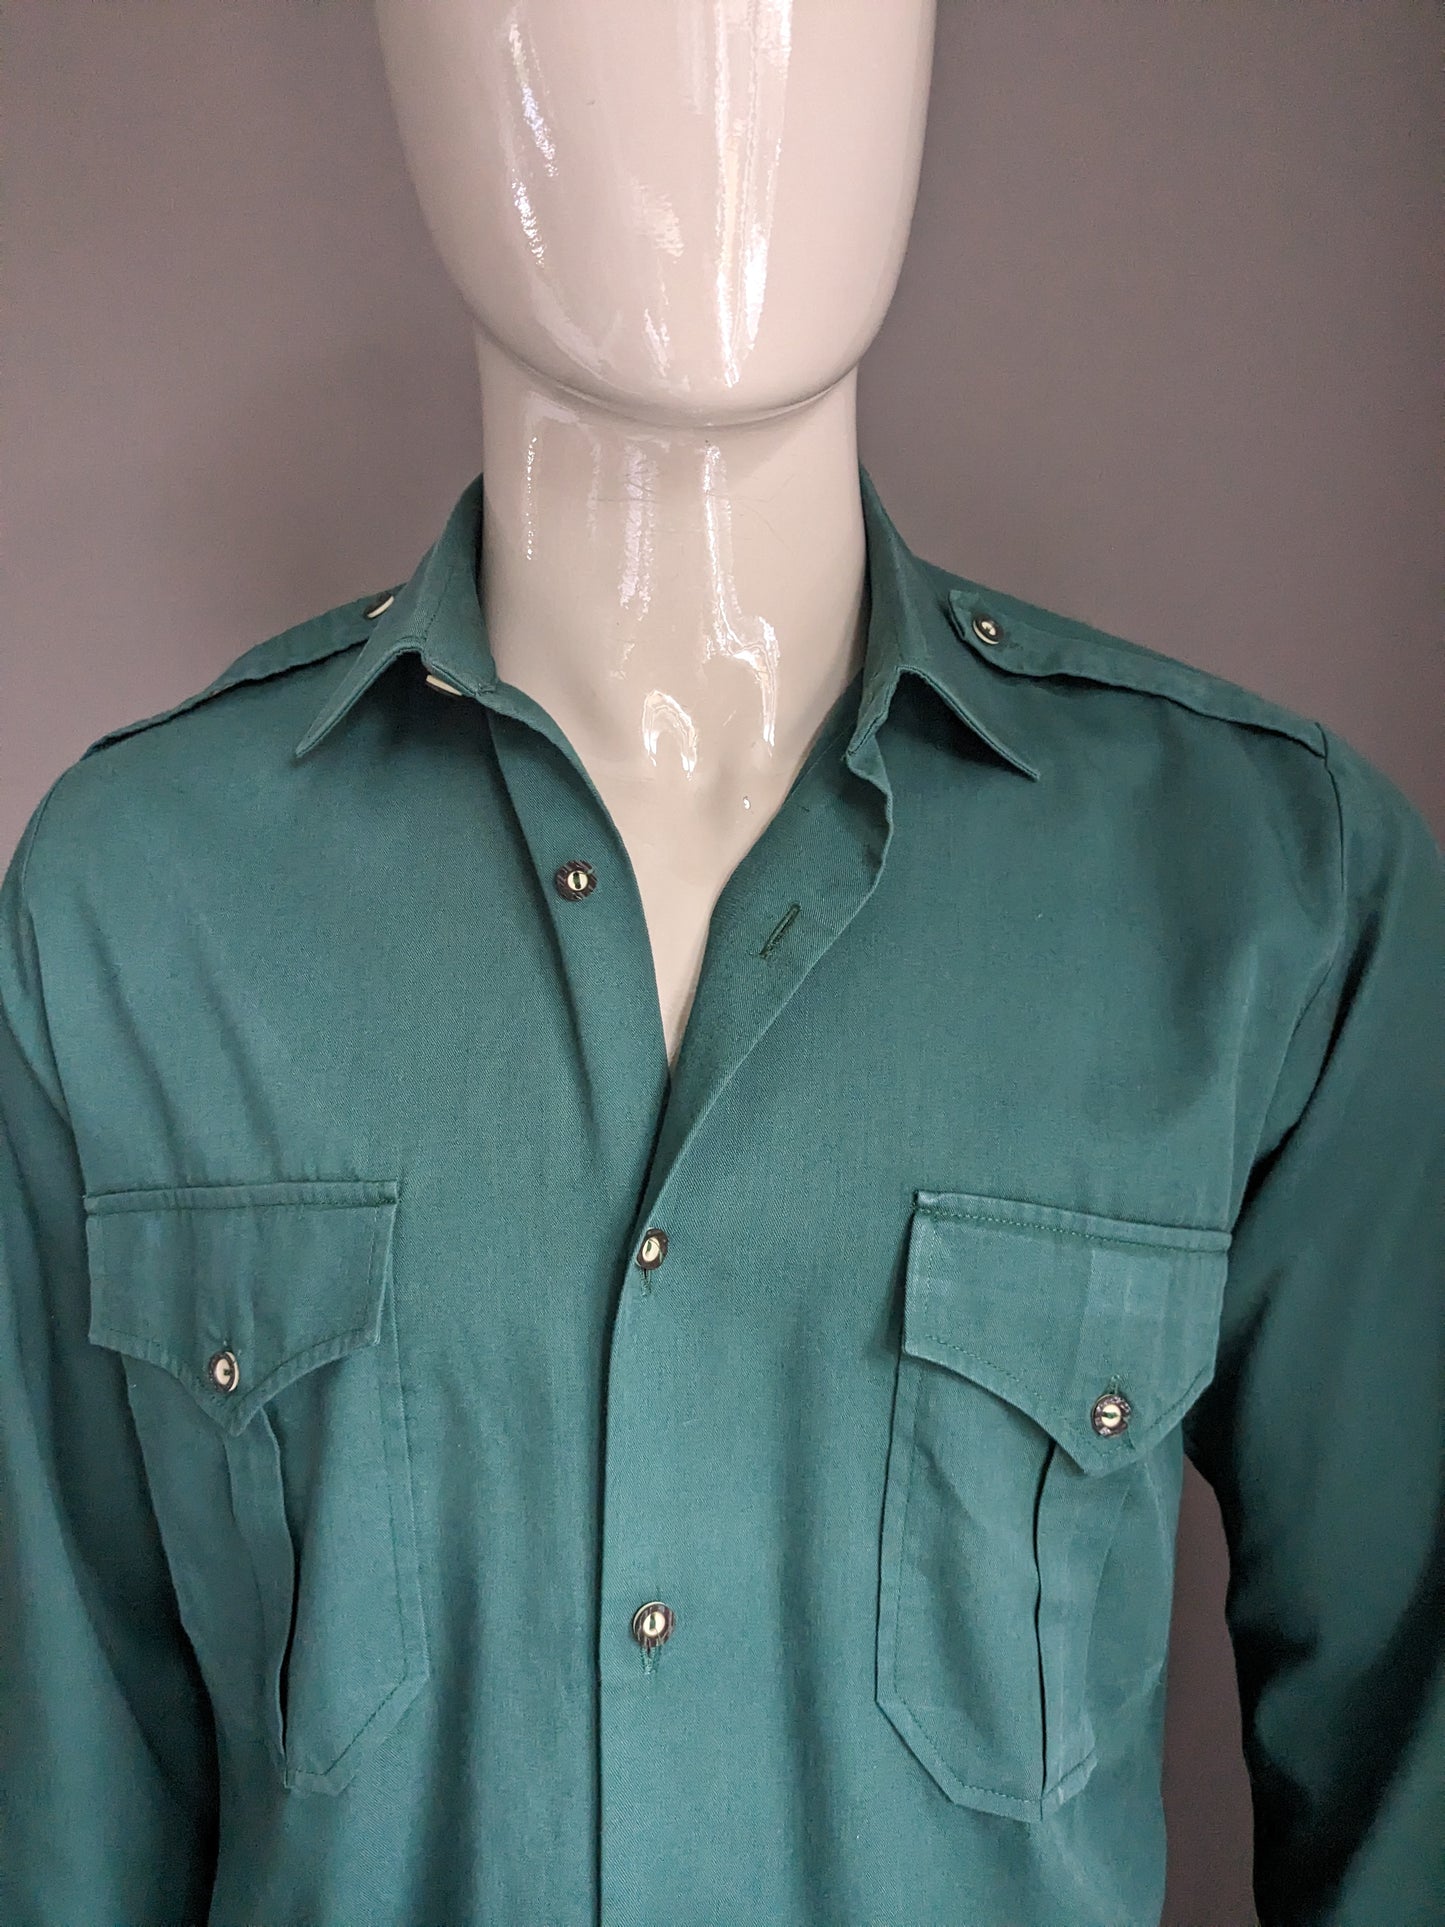 Vintage overhemd. Donker Groen gekleurd. Maat 41 / L.